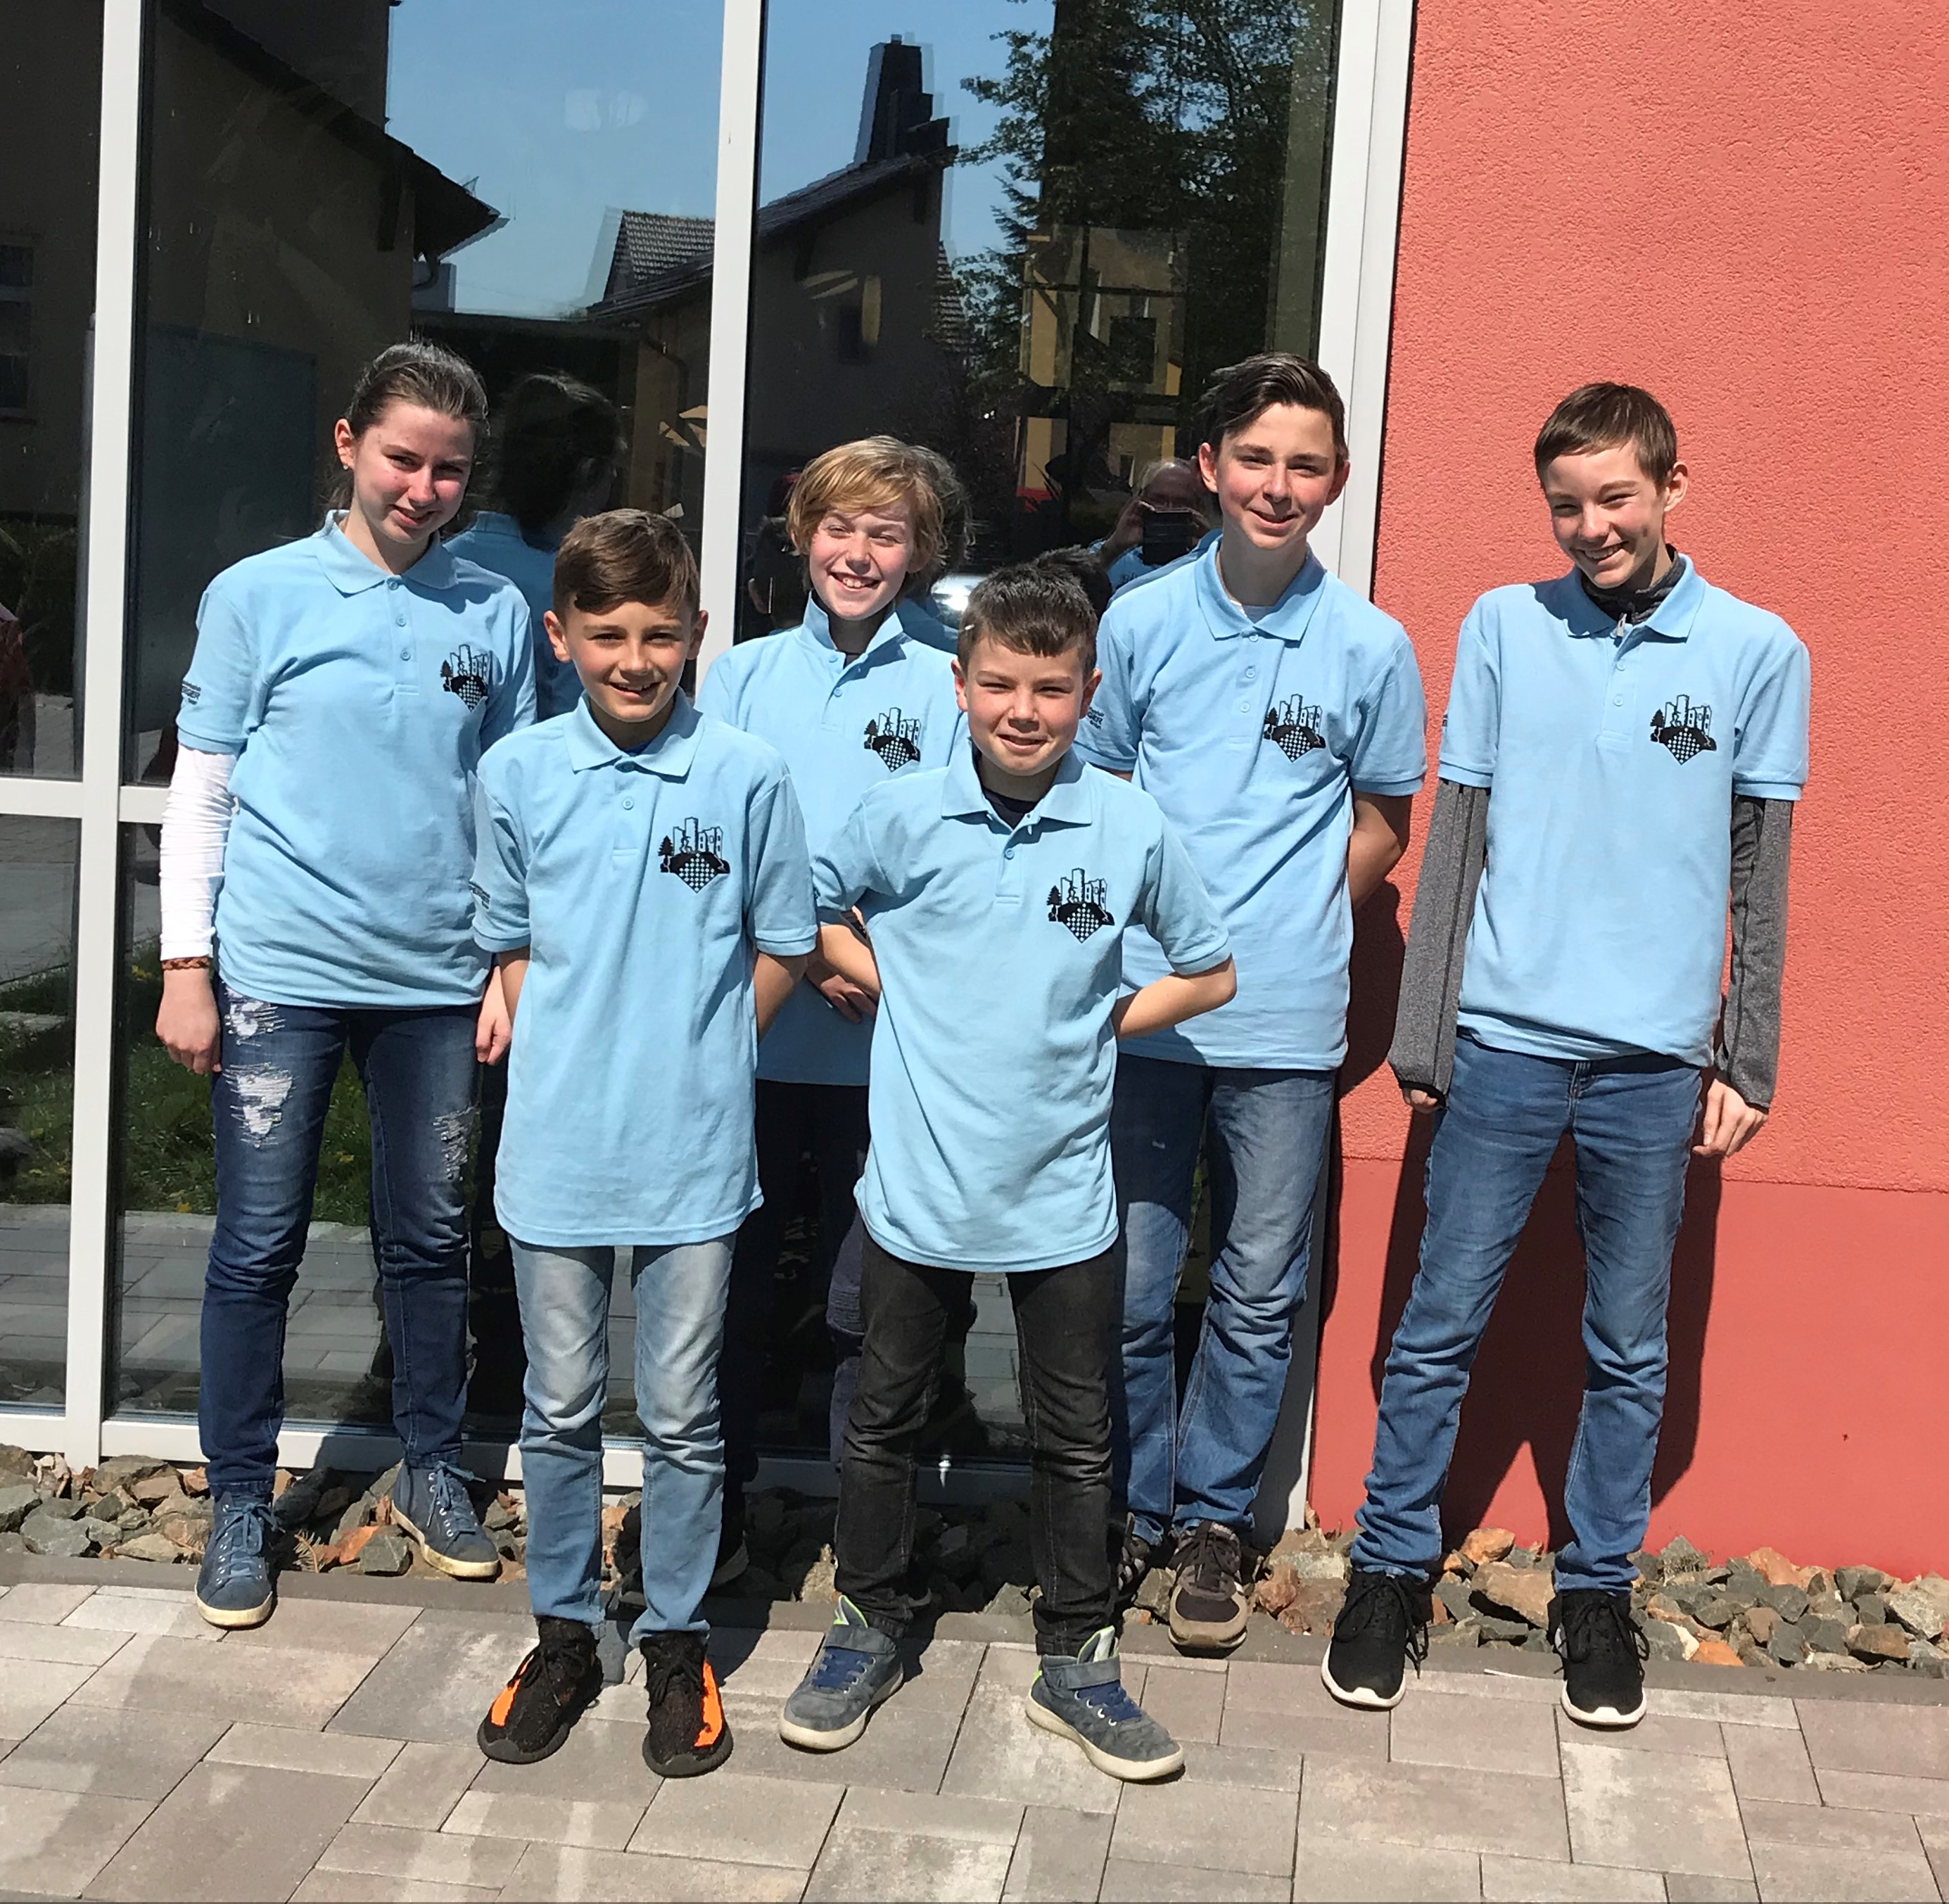 Unsere Teilnehmer bei der Thüringer Einzelmeisterschaft in ihren neuen Shirts